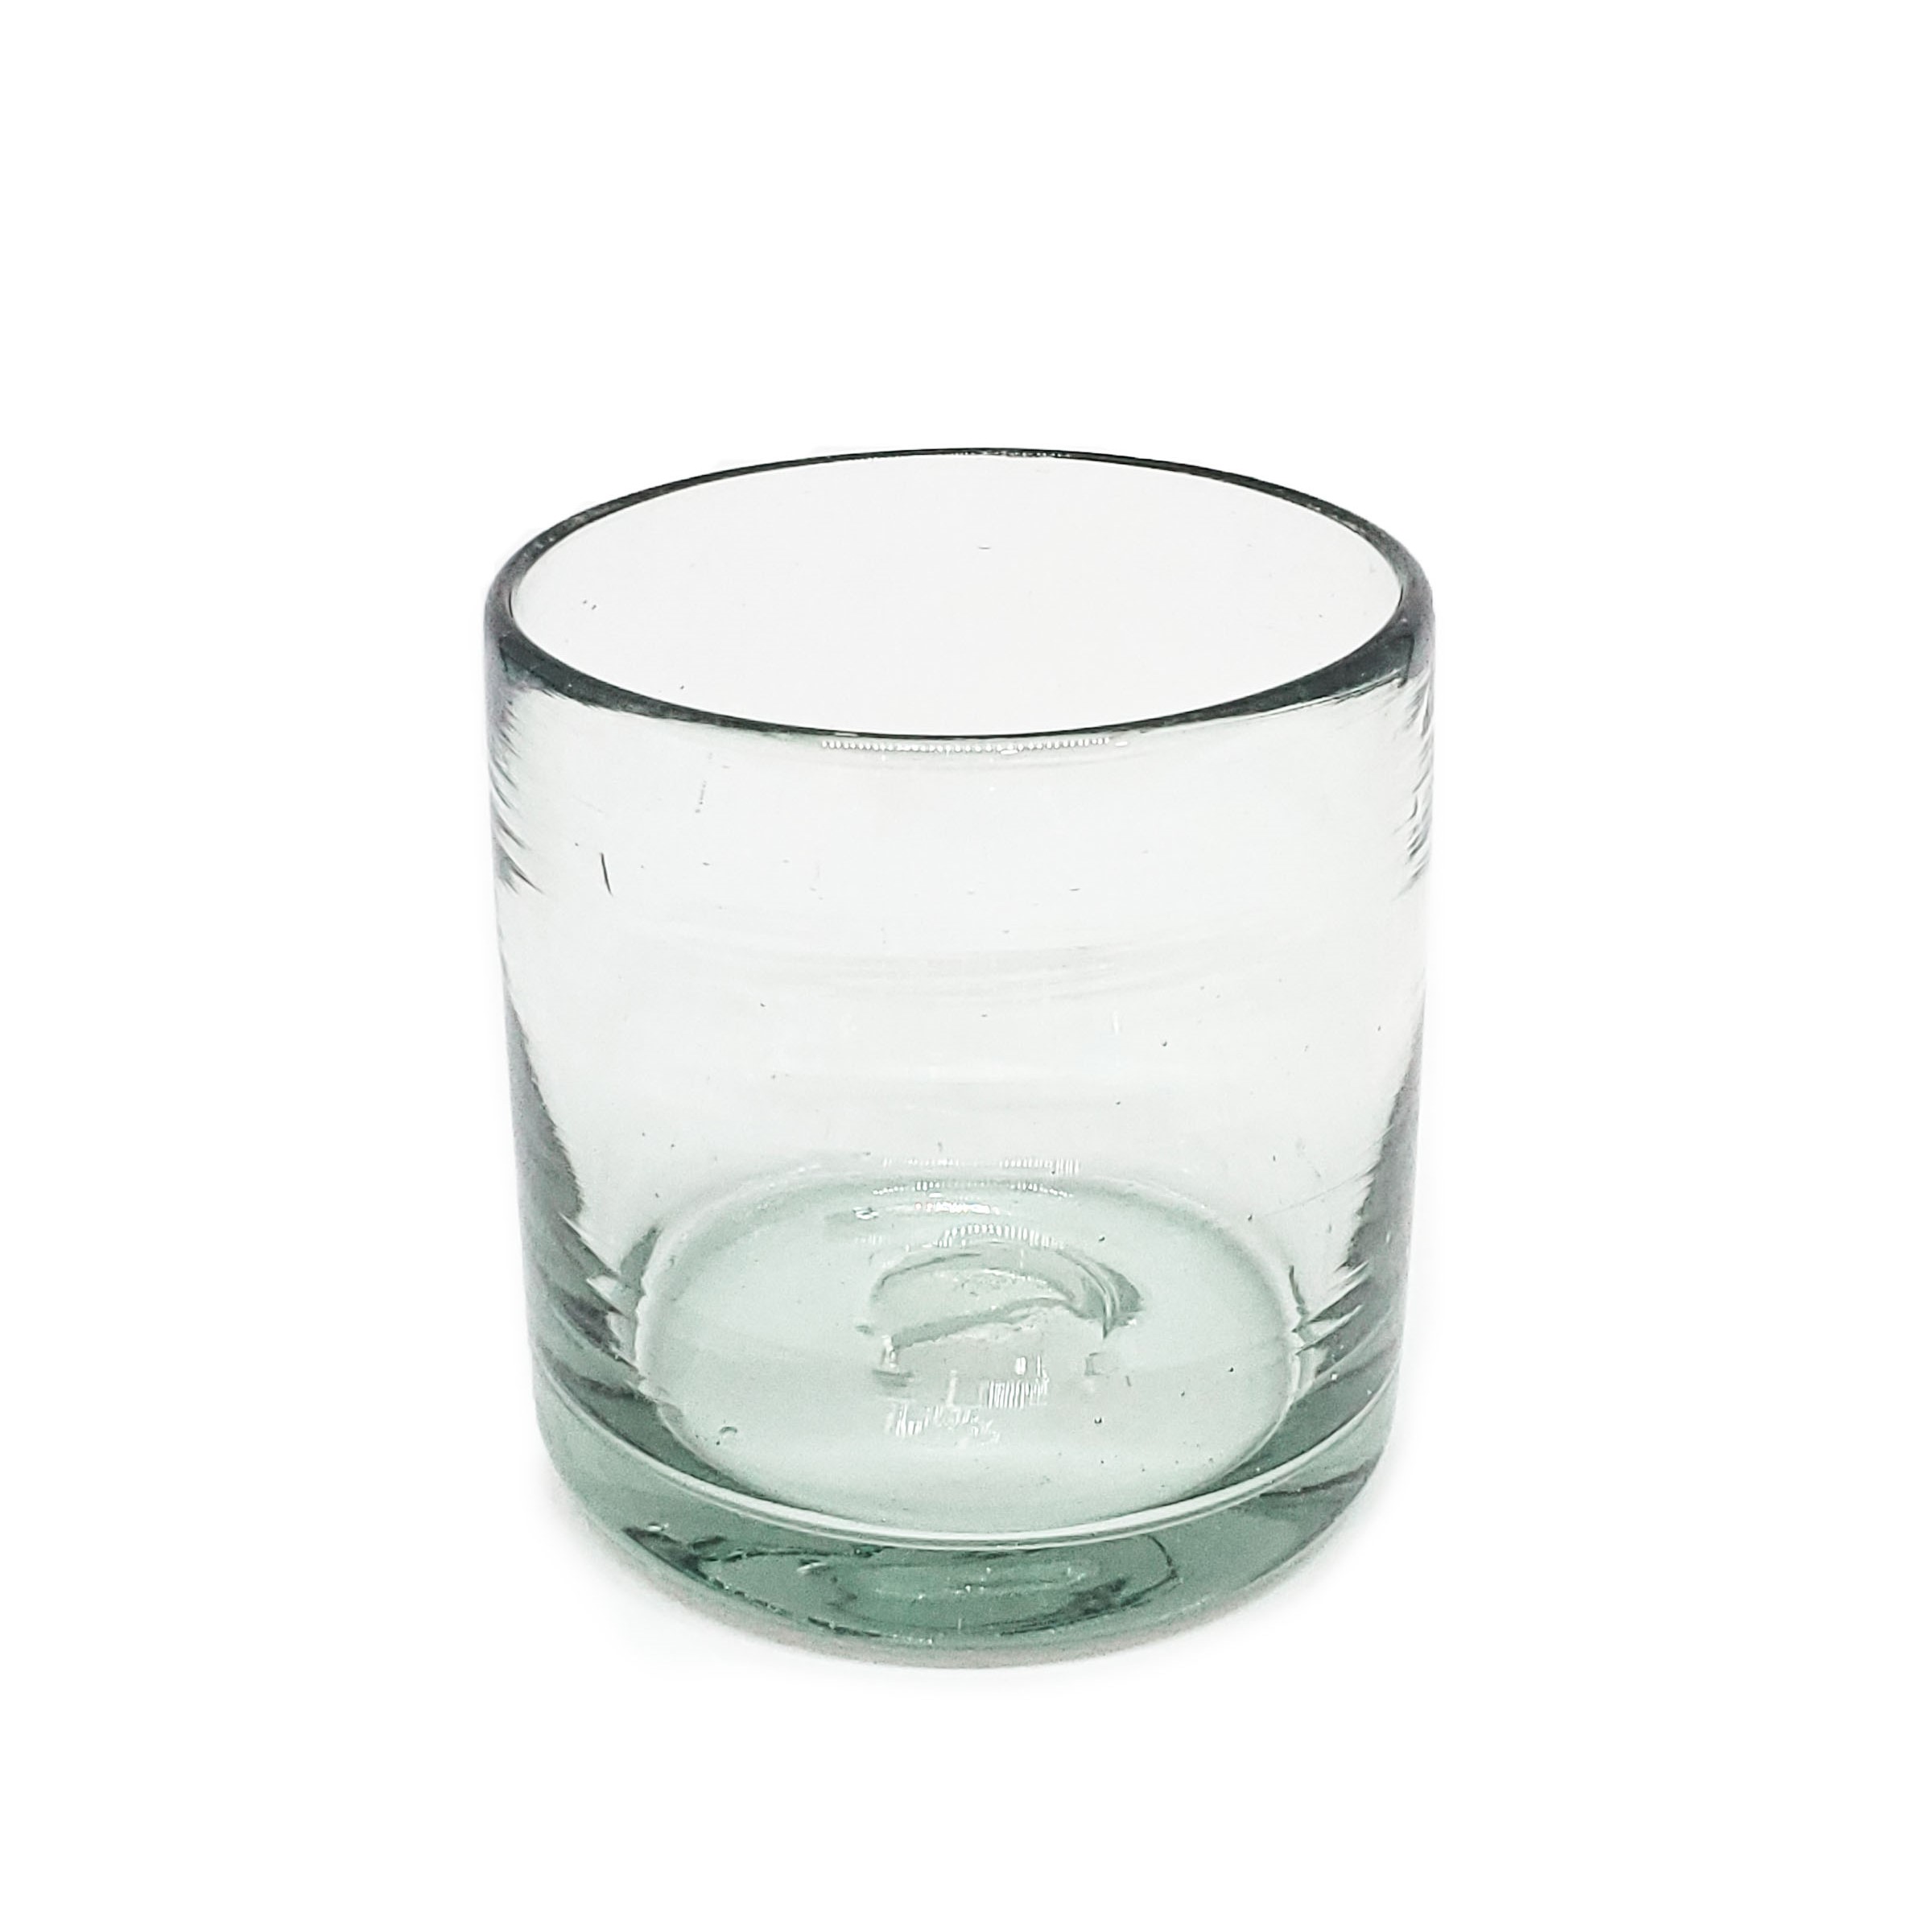 VIDRIO SOPLADO / Juego de 6 vasos DOF 8oz Transparentes, 8 oz, Vidrio Reciclado, Libre de Plomo y Toxinas